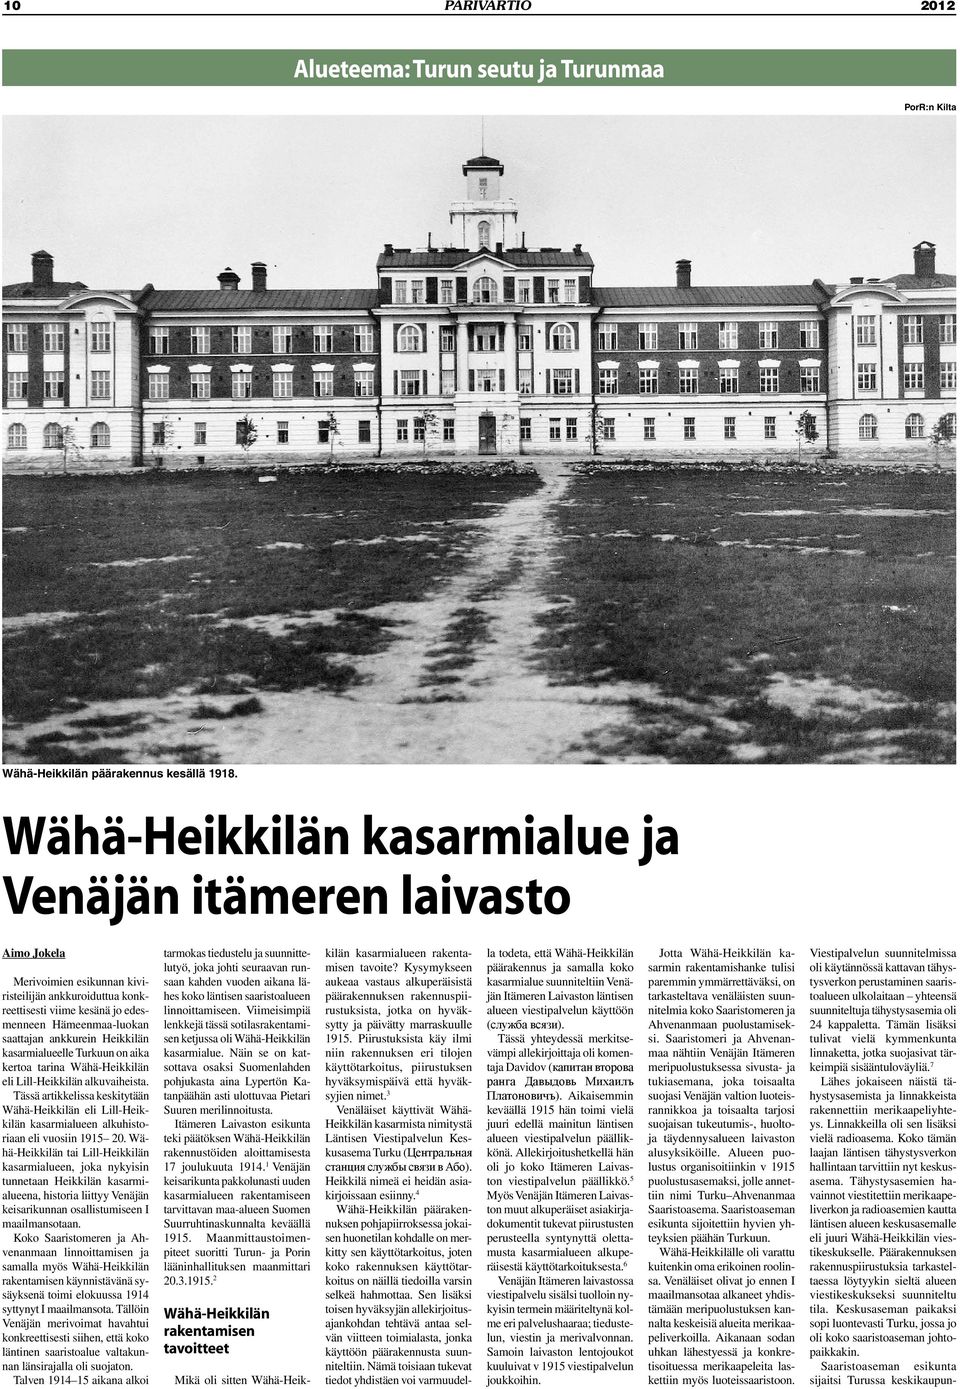 ankkurein Heikkilän kasarmialueelle Turkuun on aika kertoa tarina Wähä-Heikkilän eli Lill-Heikkilän alkuvaiheista.